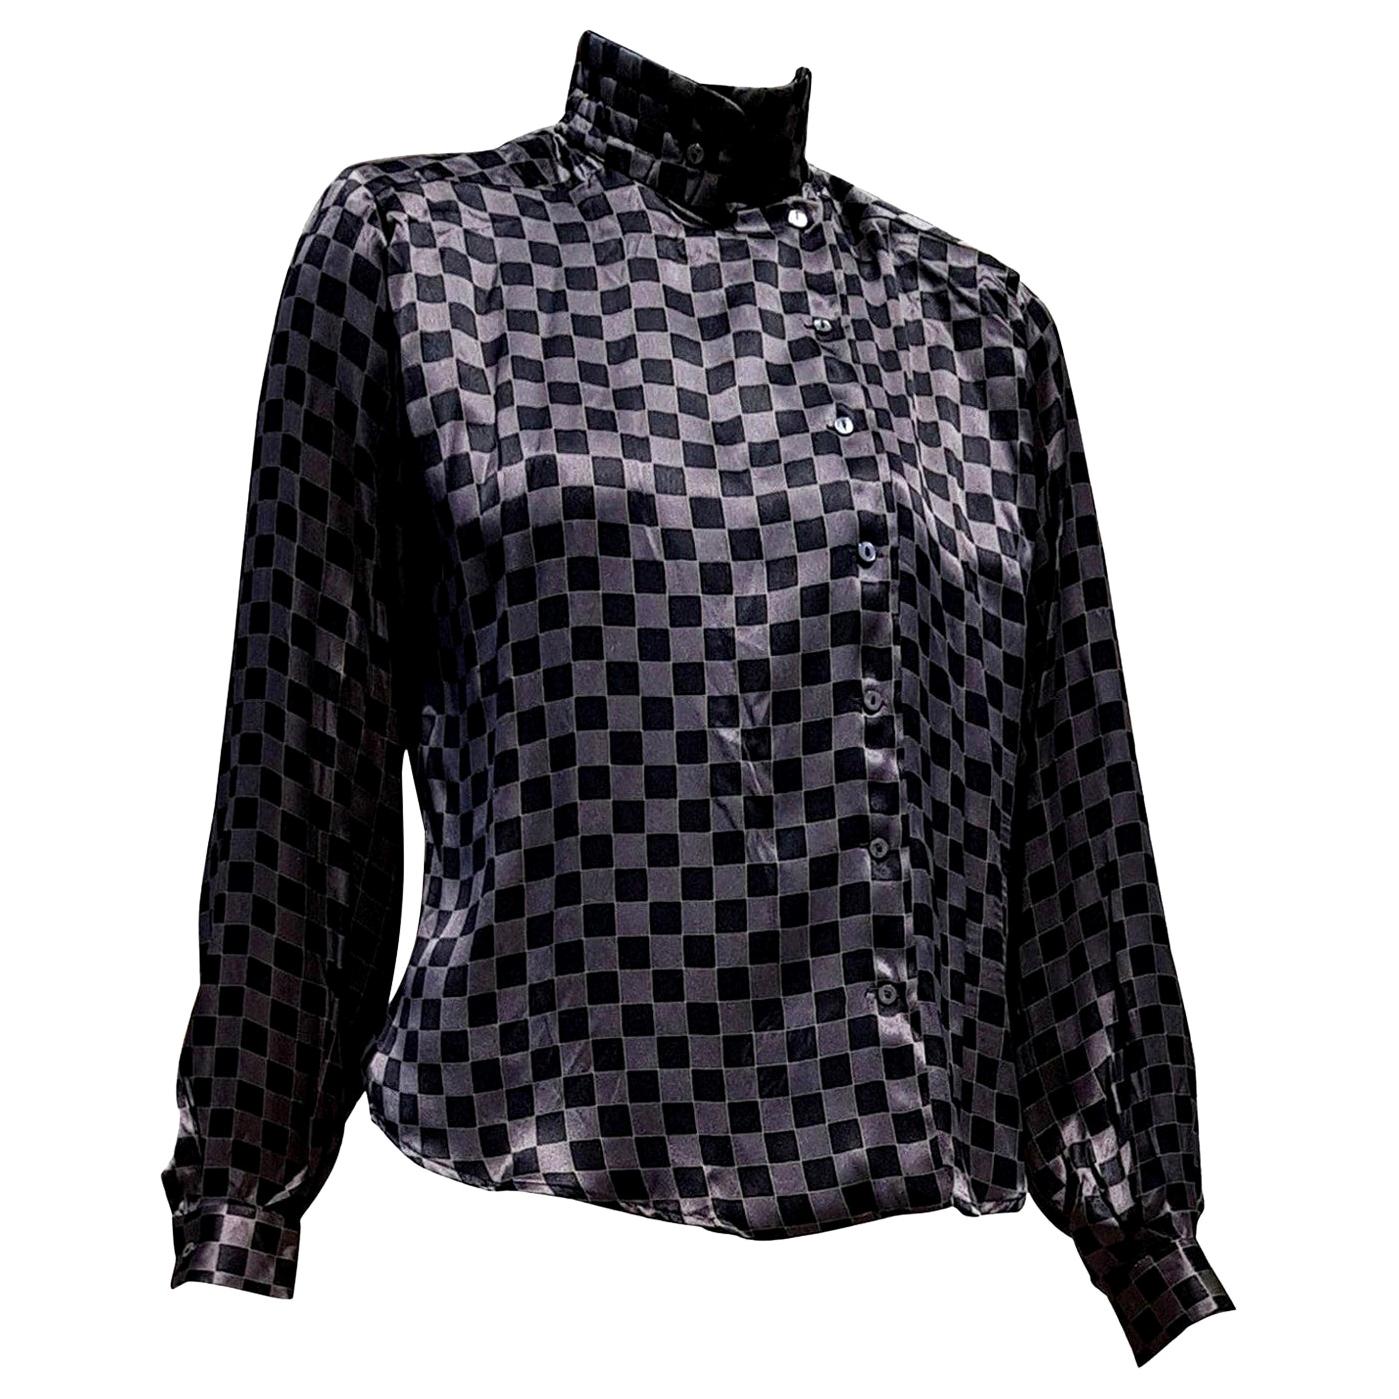 Giorgio ARMANI "New" Brown Silver Black Silk Shirt - Unworn For Sale